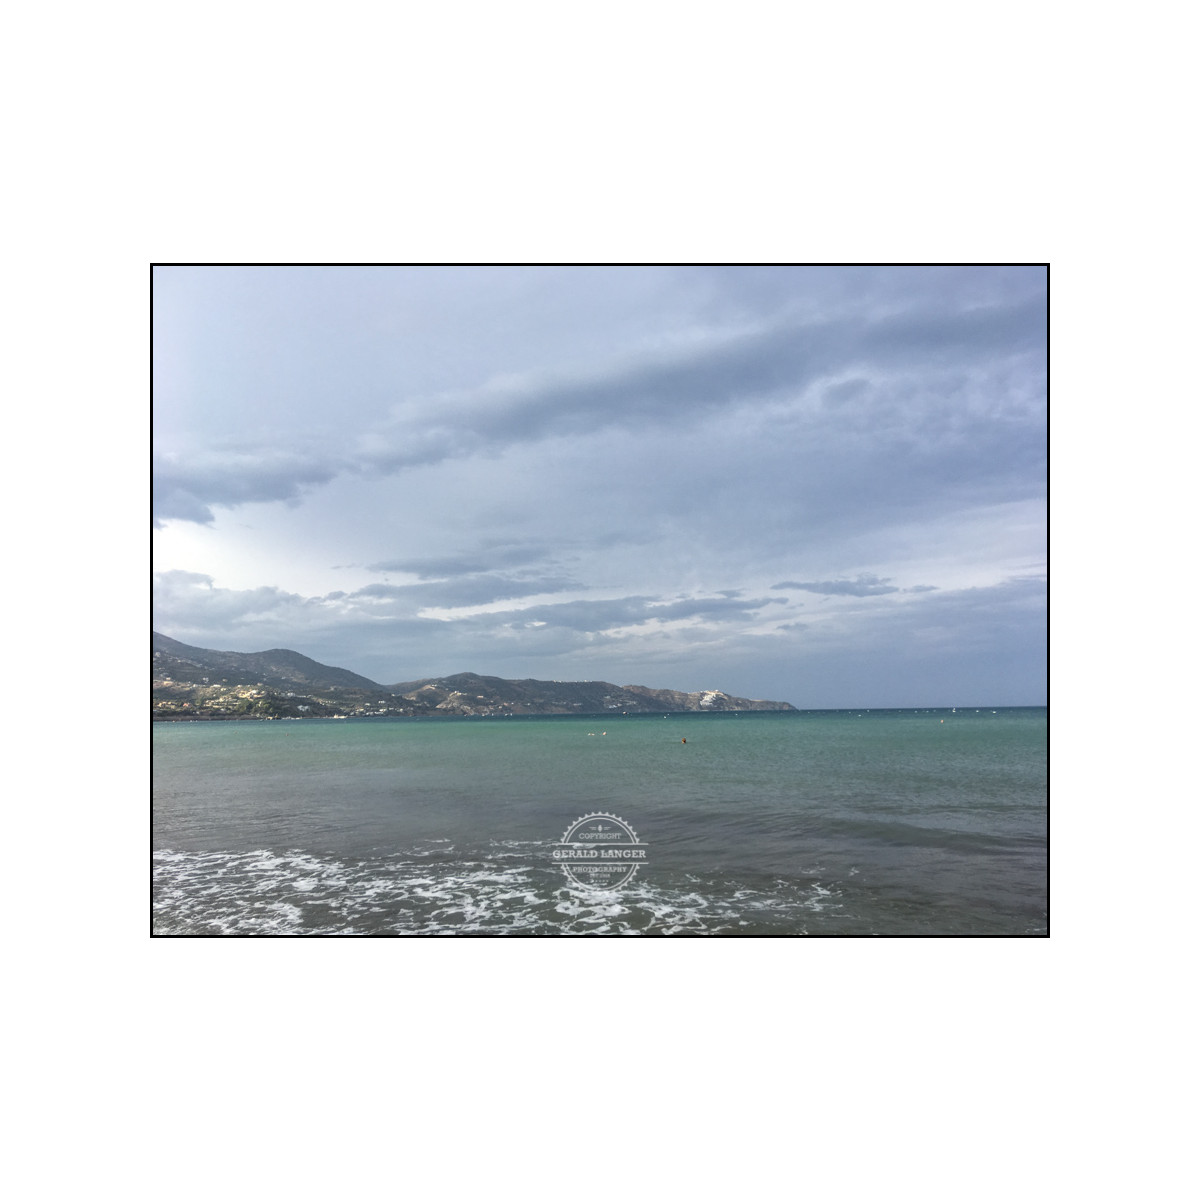 20181118 Kreta by iPhone SE © Gerald Langer 140 - Gerald Langer